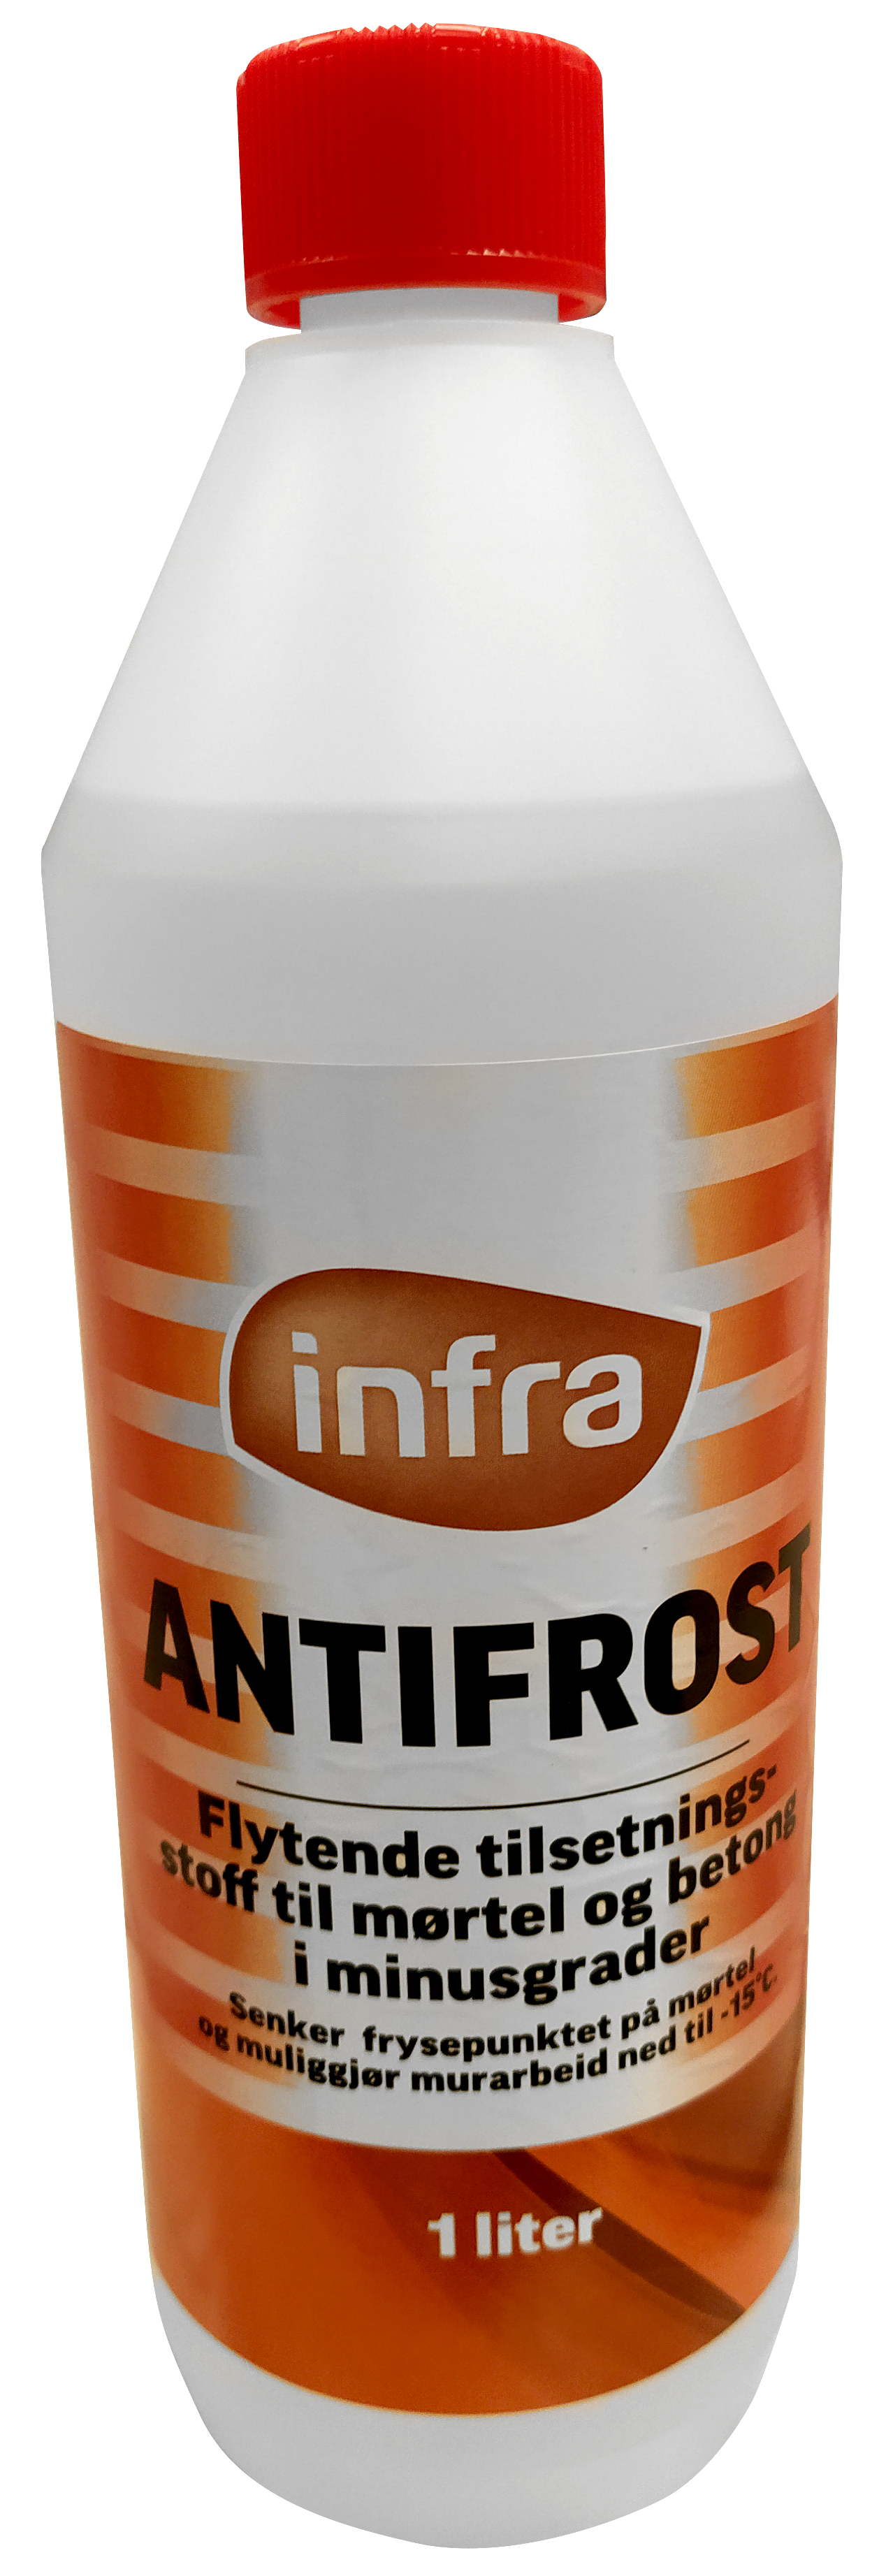 Infra Antifrost